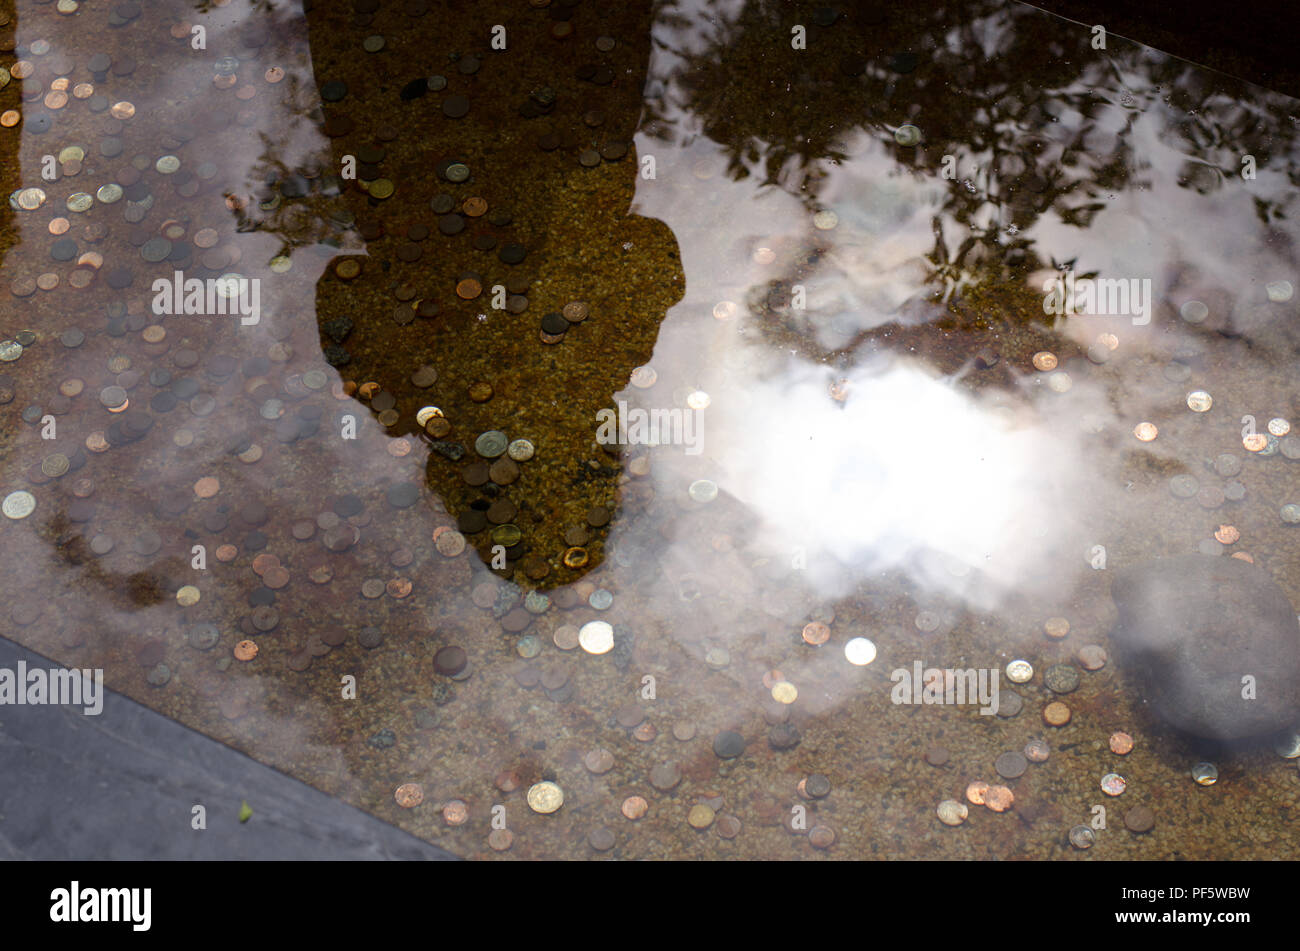 Werfen Münzen in einem Pool/Teich und macht einen Wunsch wahr werden (hoffentlich). Stockfoto